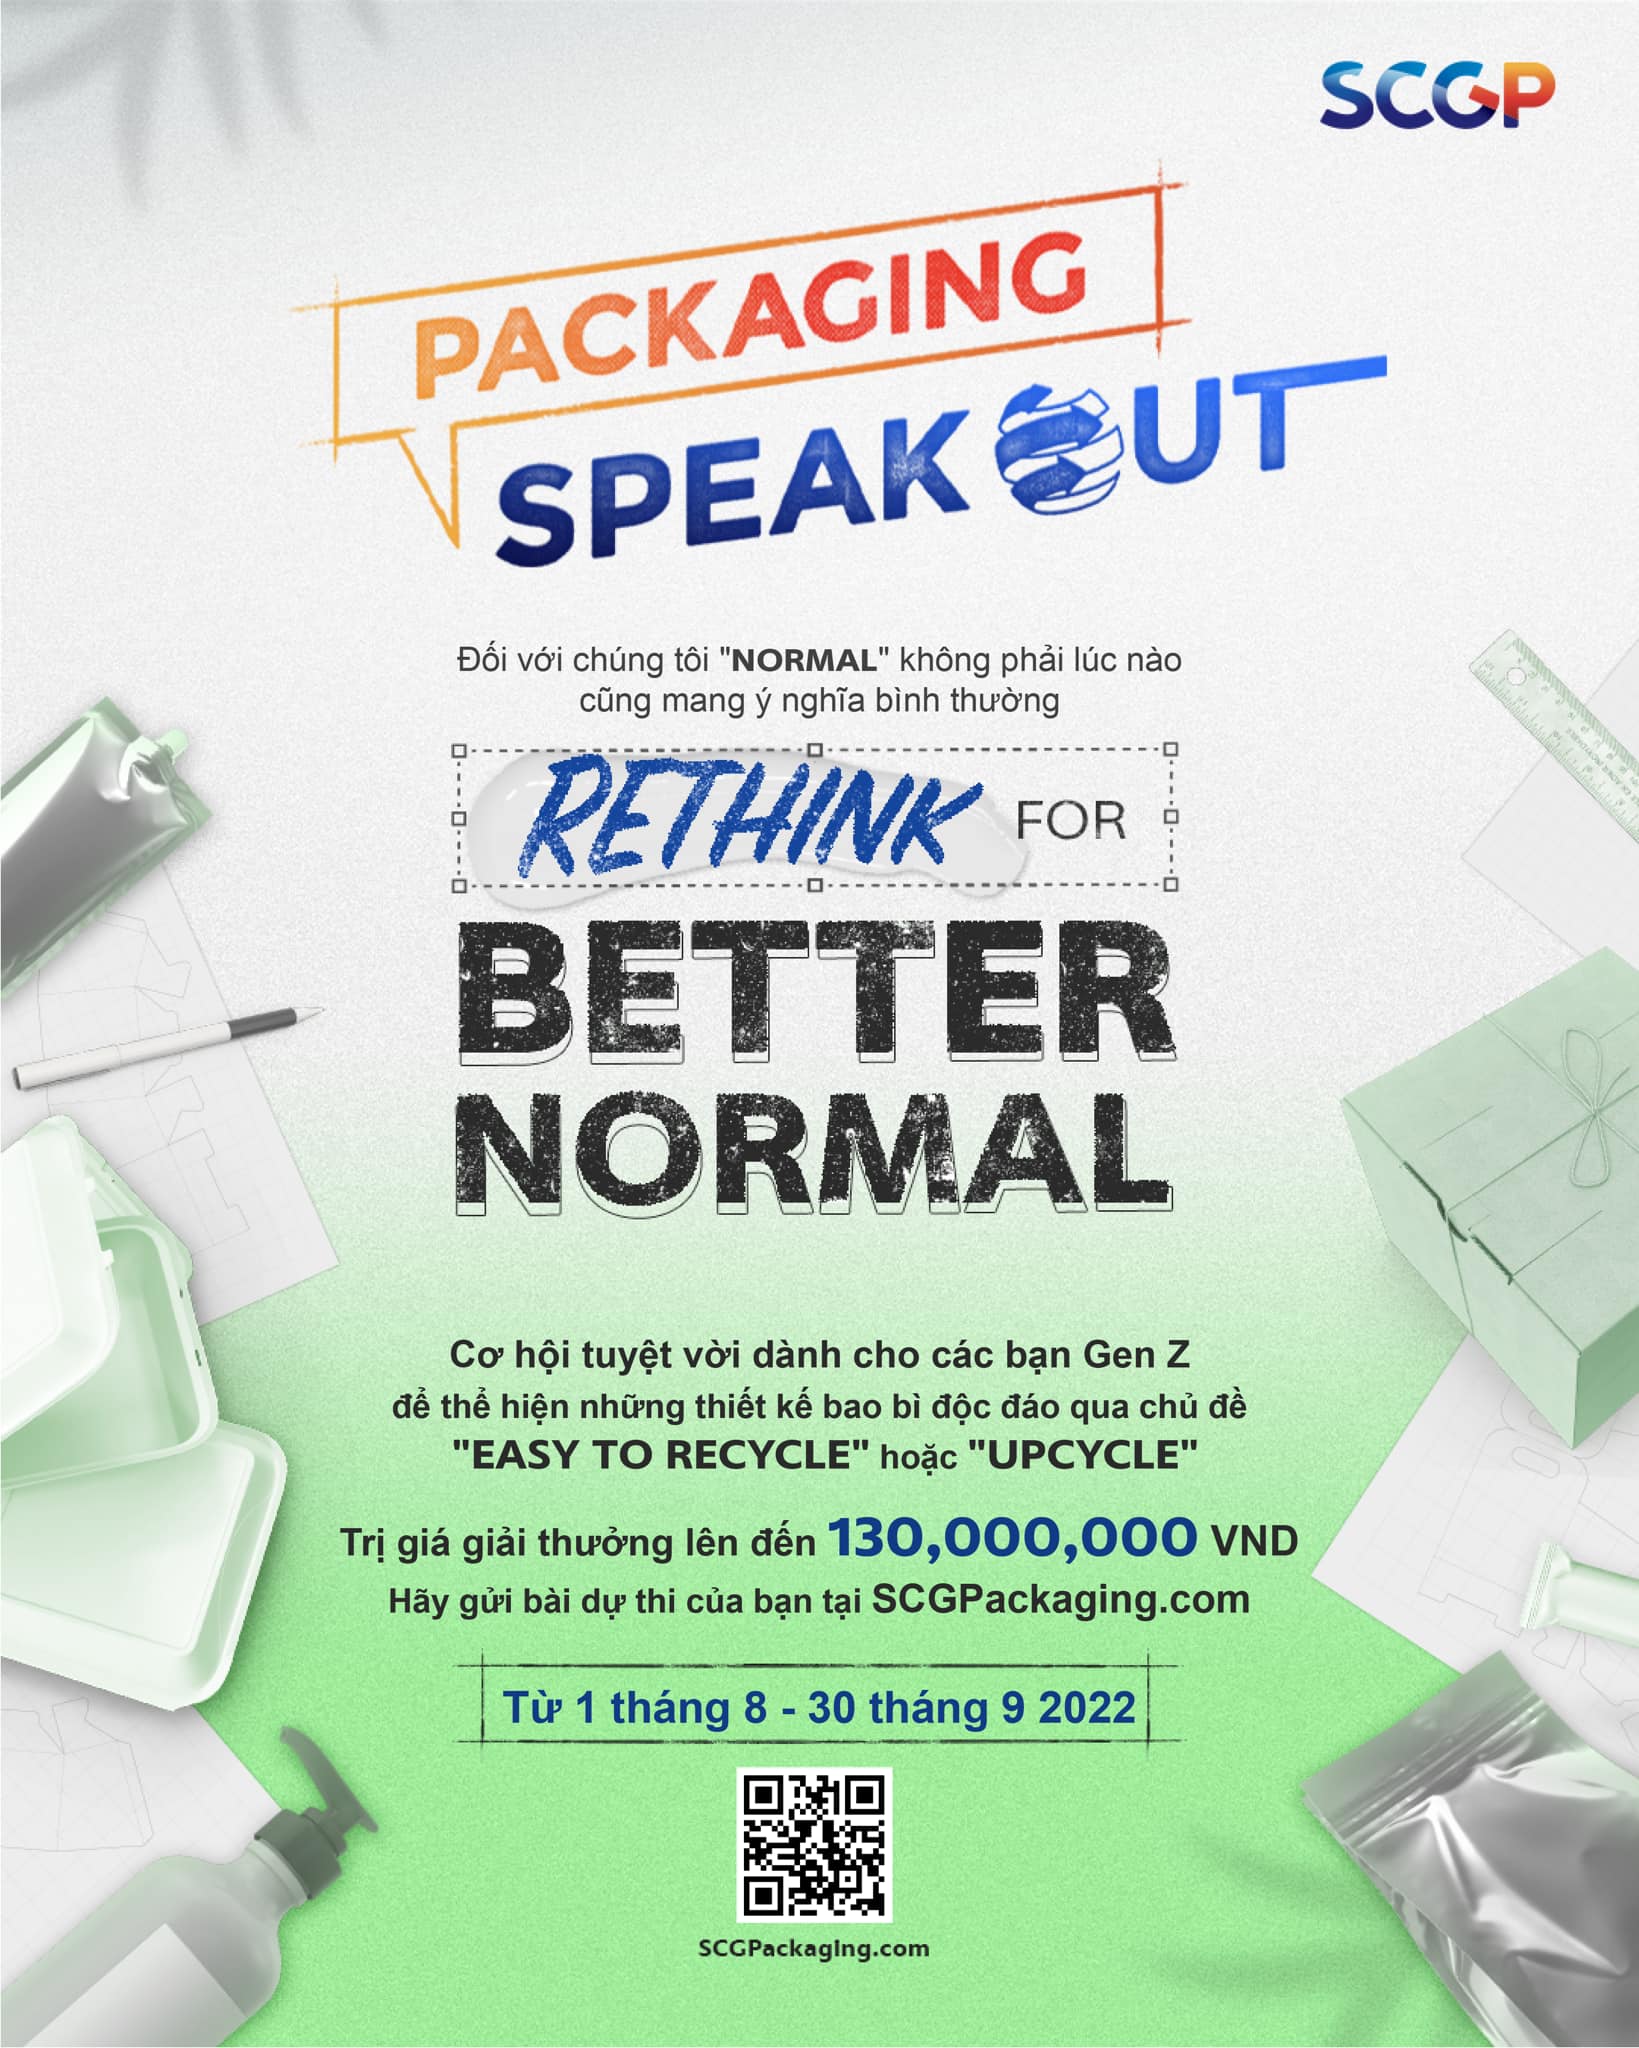 Cuộc thi thiết kế bao bì SCGP Packaging Speak Out 2022 - Việt Nam chính thức khởi động, truyền cảm hứng cho giới trẻ, “nghĩ khác” vì một thế giới tốt đẹp hơn